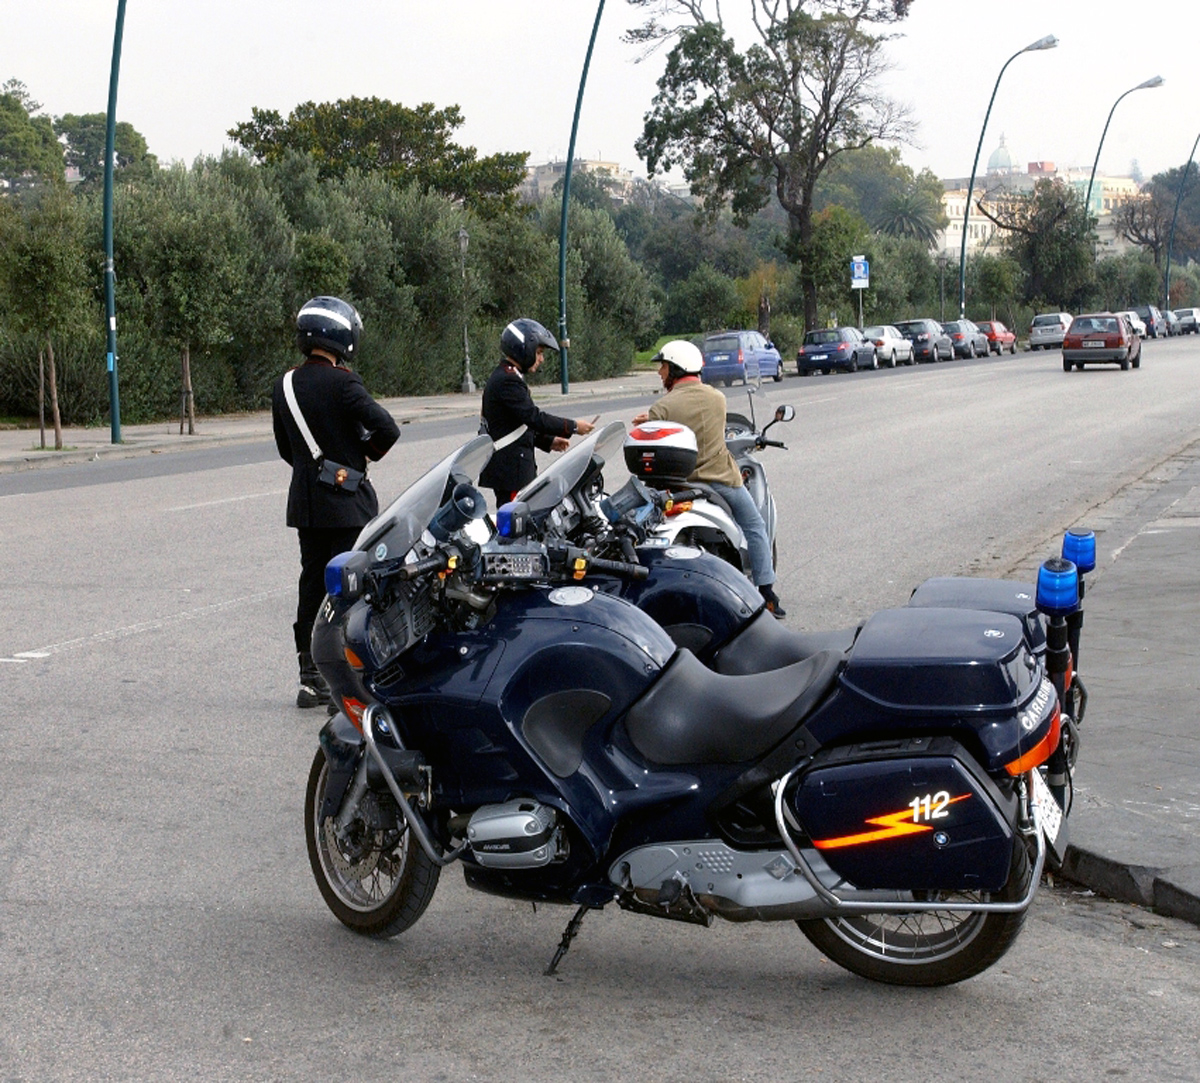  Arenella, fermato per guida senza assicurazione aggredisce carabinieri: arrestato 27enne